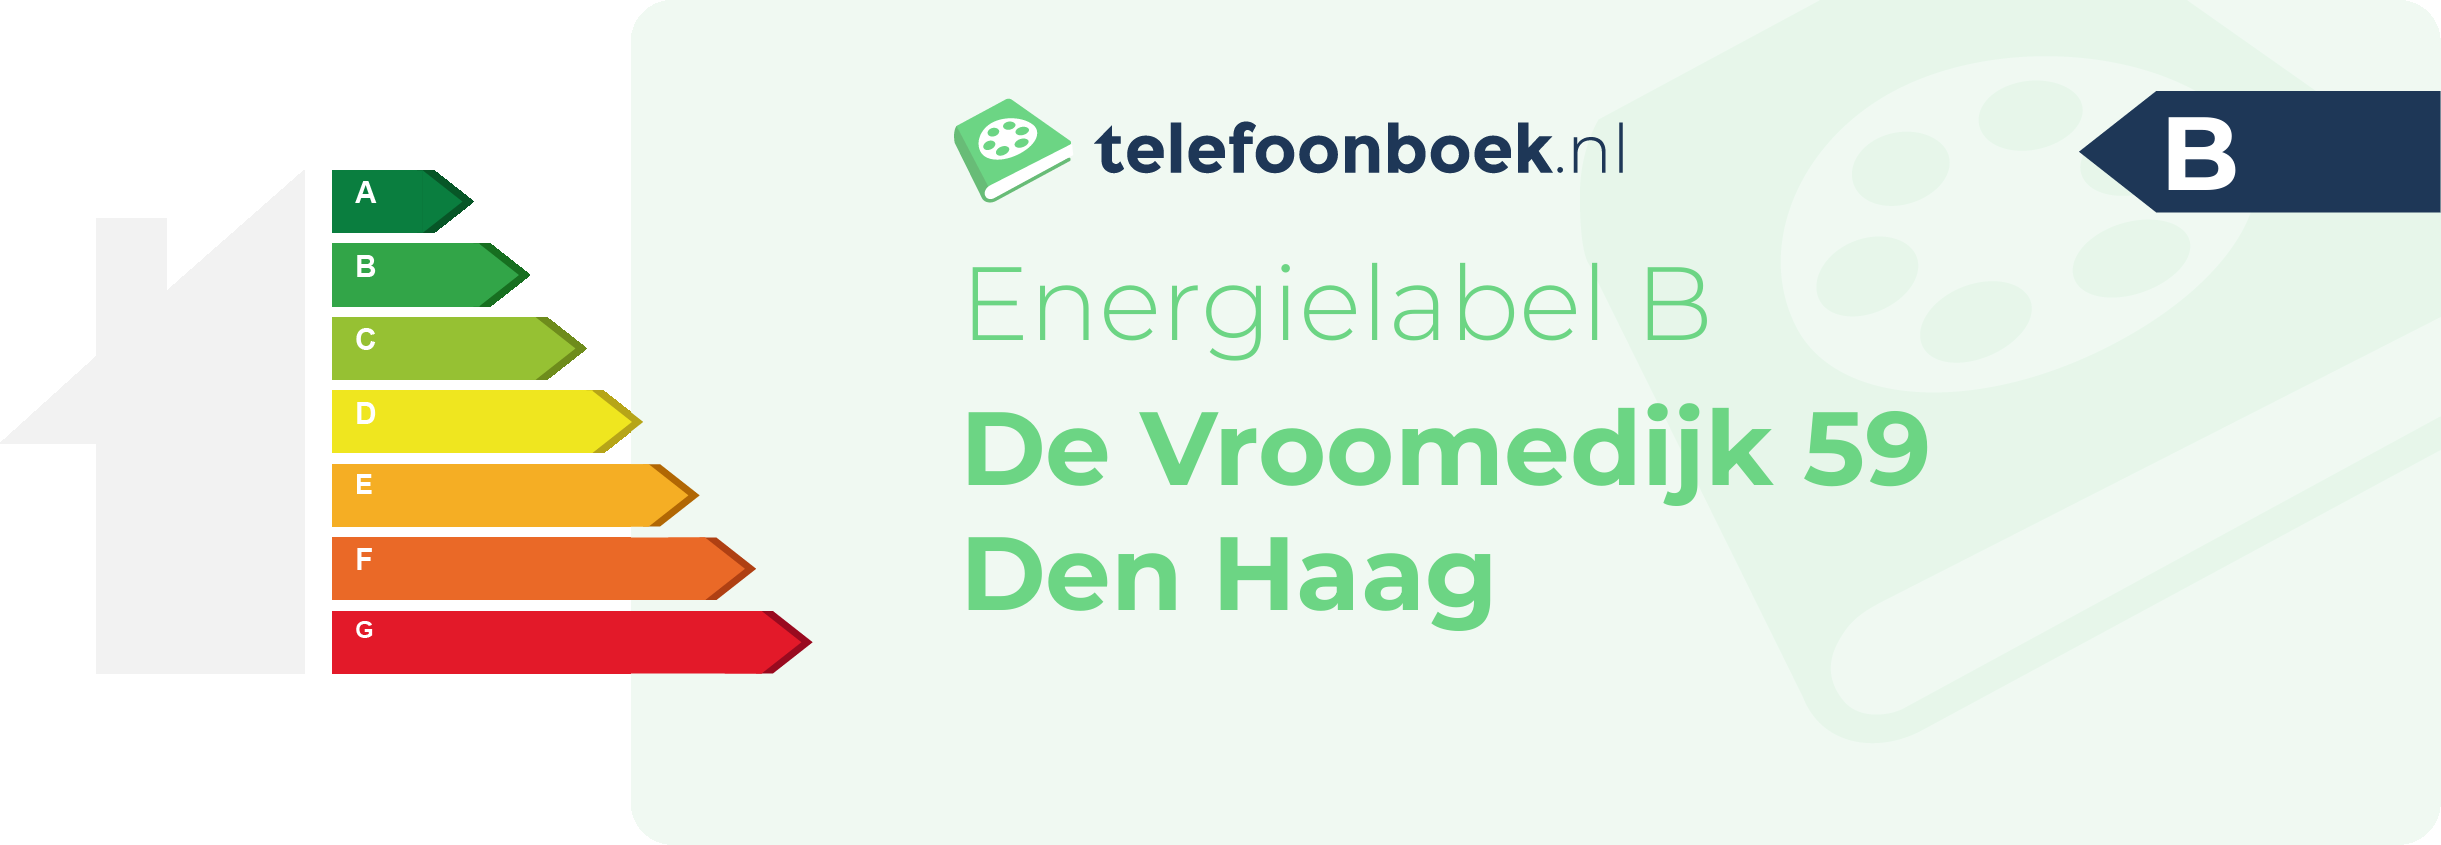 Energielabel De Vroomedijk 59 Den Haag